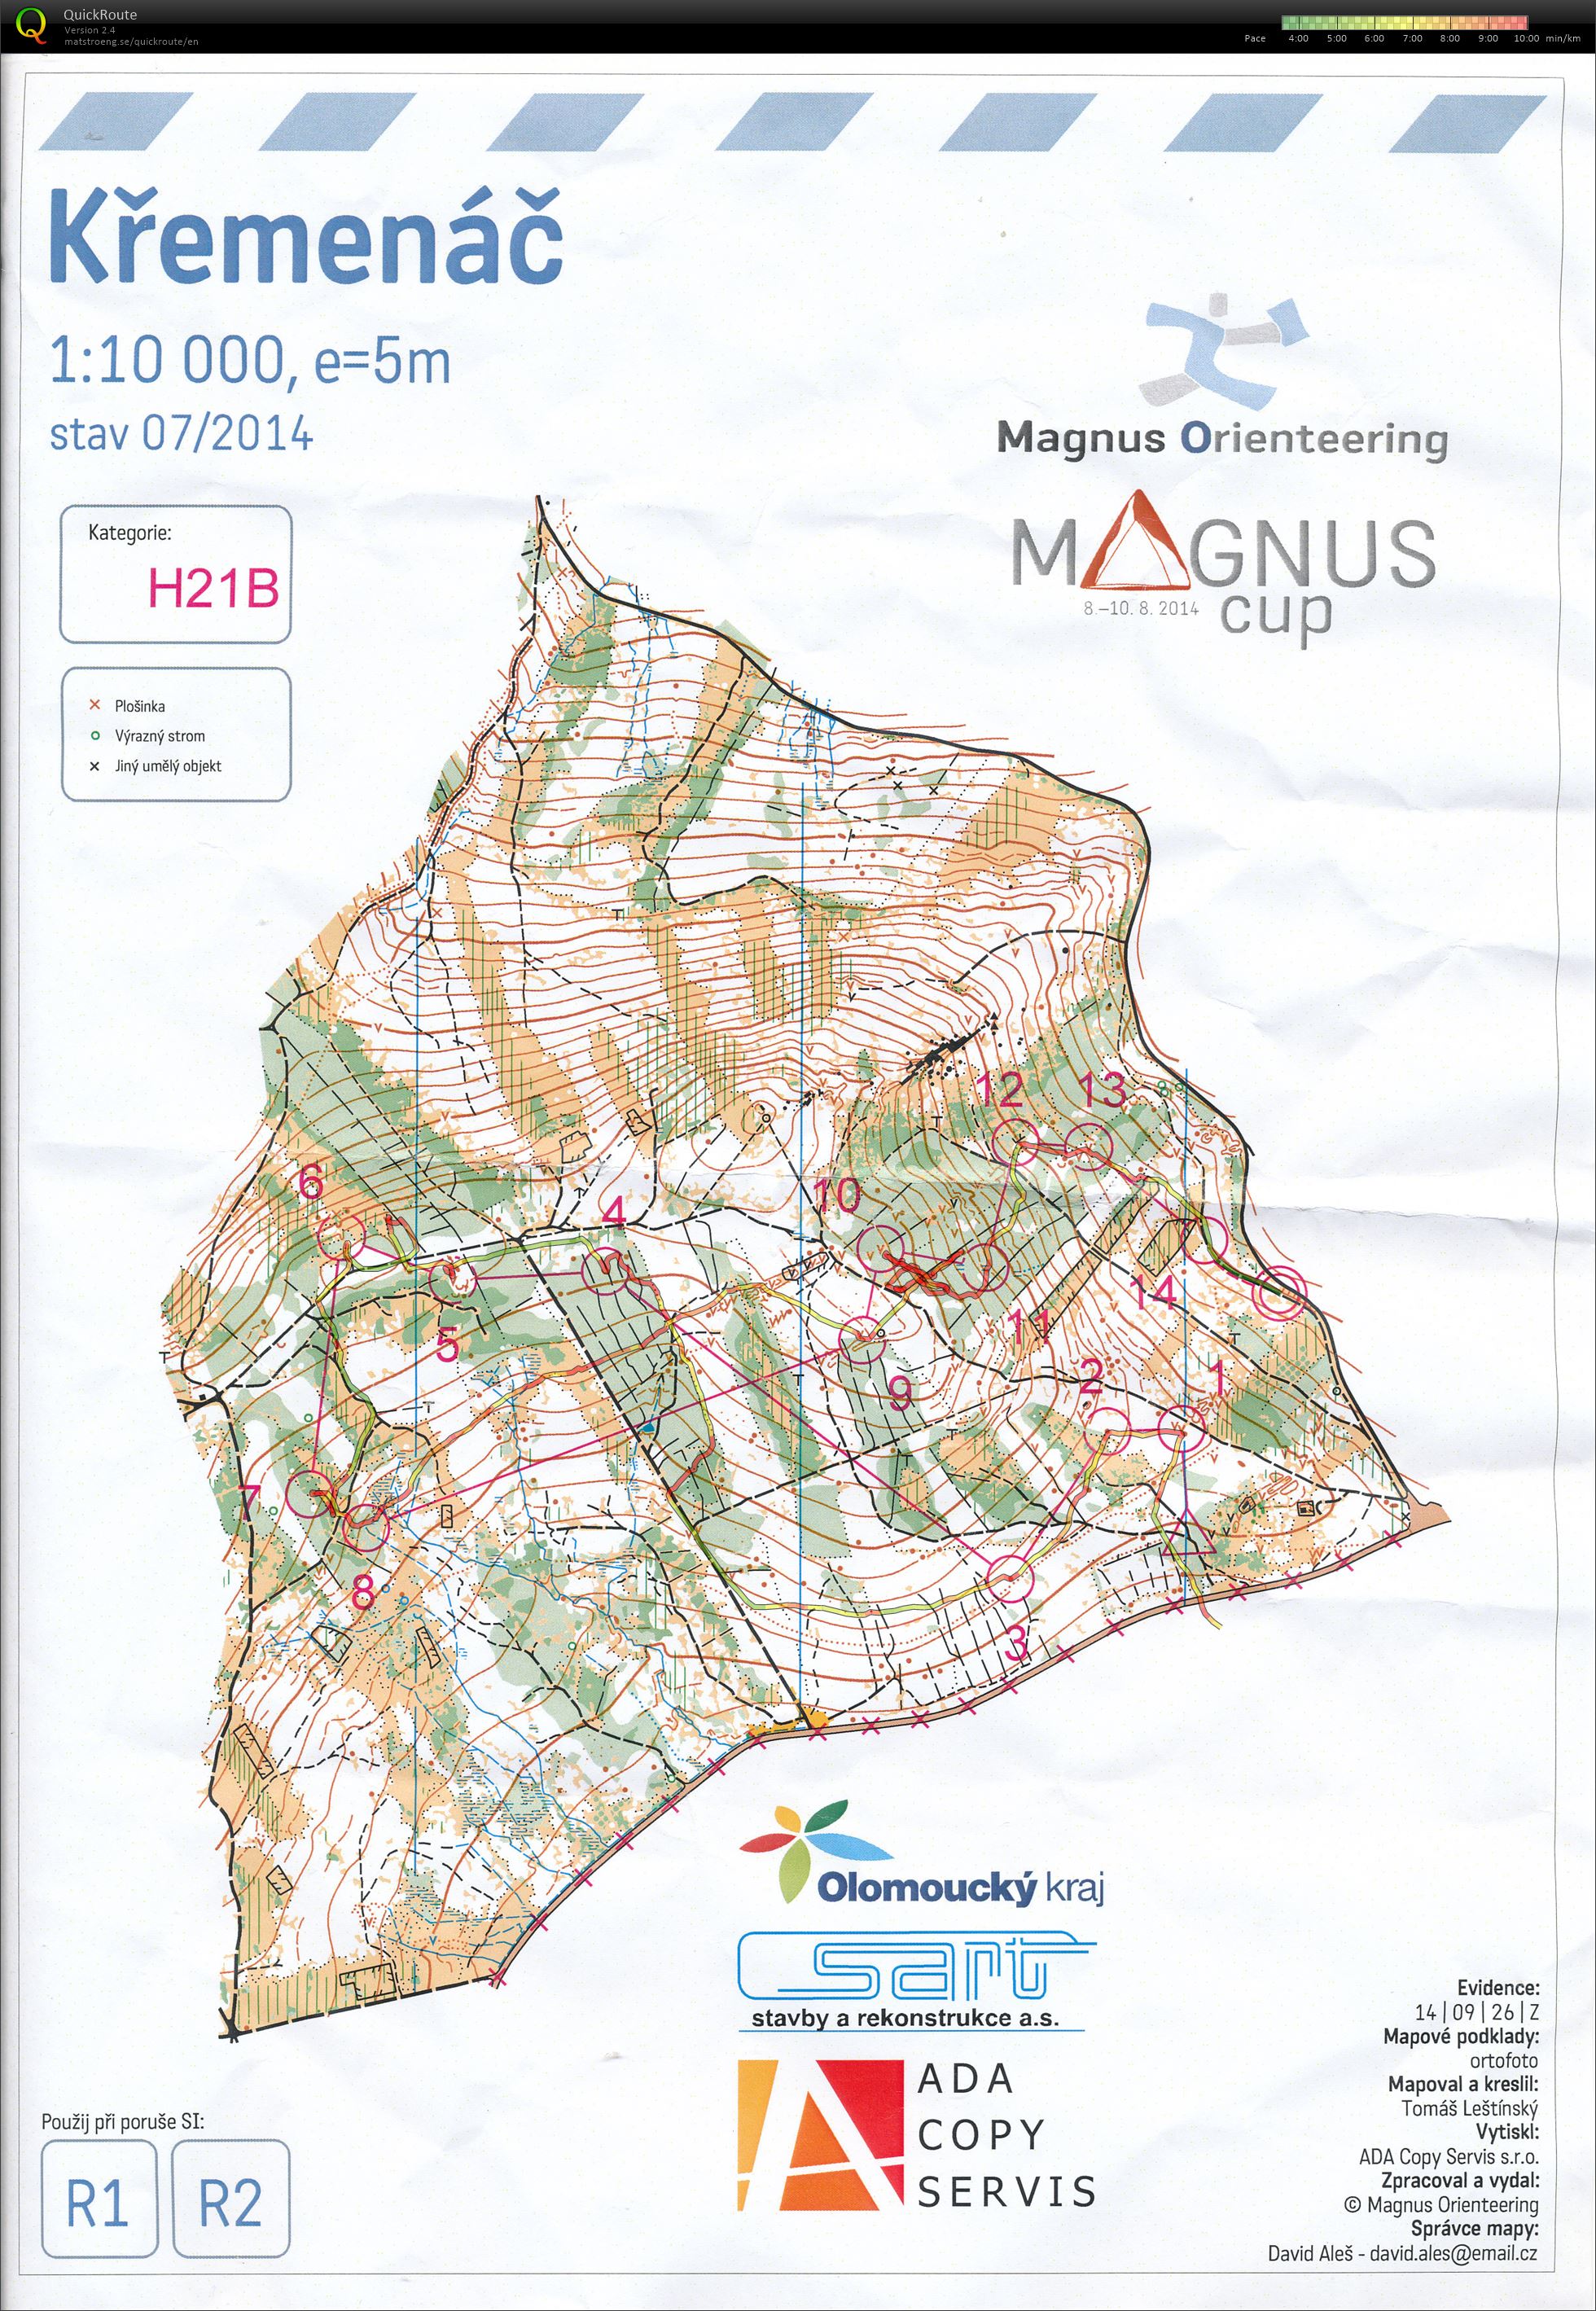 Magnus Cup - Etapa 1 (08/08/2014)